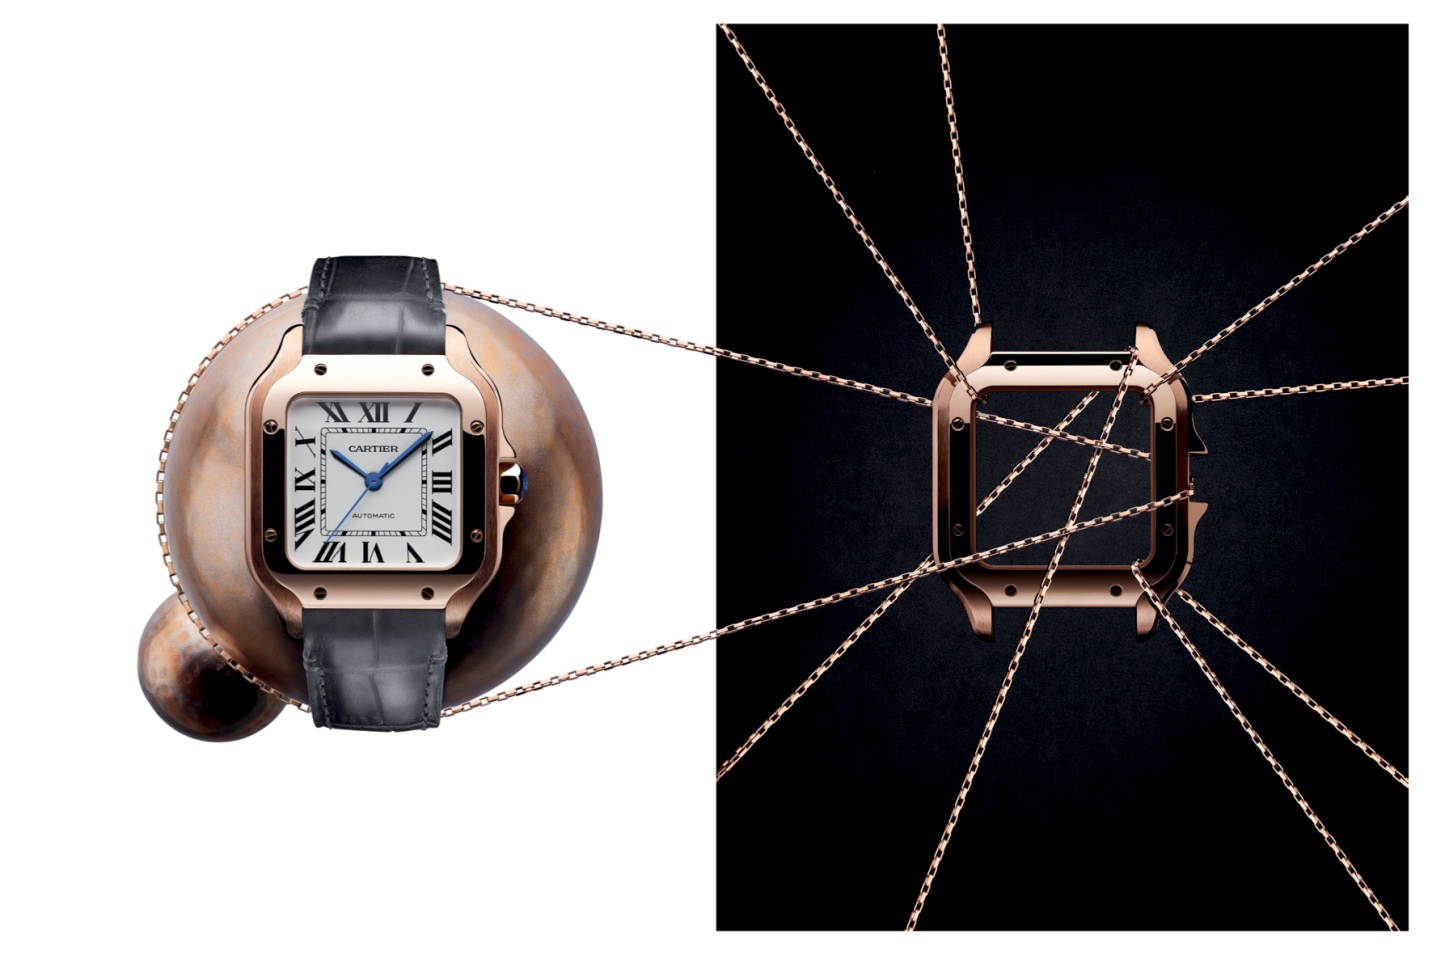 đồng hồ Cartier chính hãng